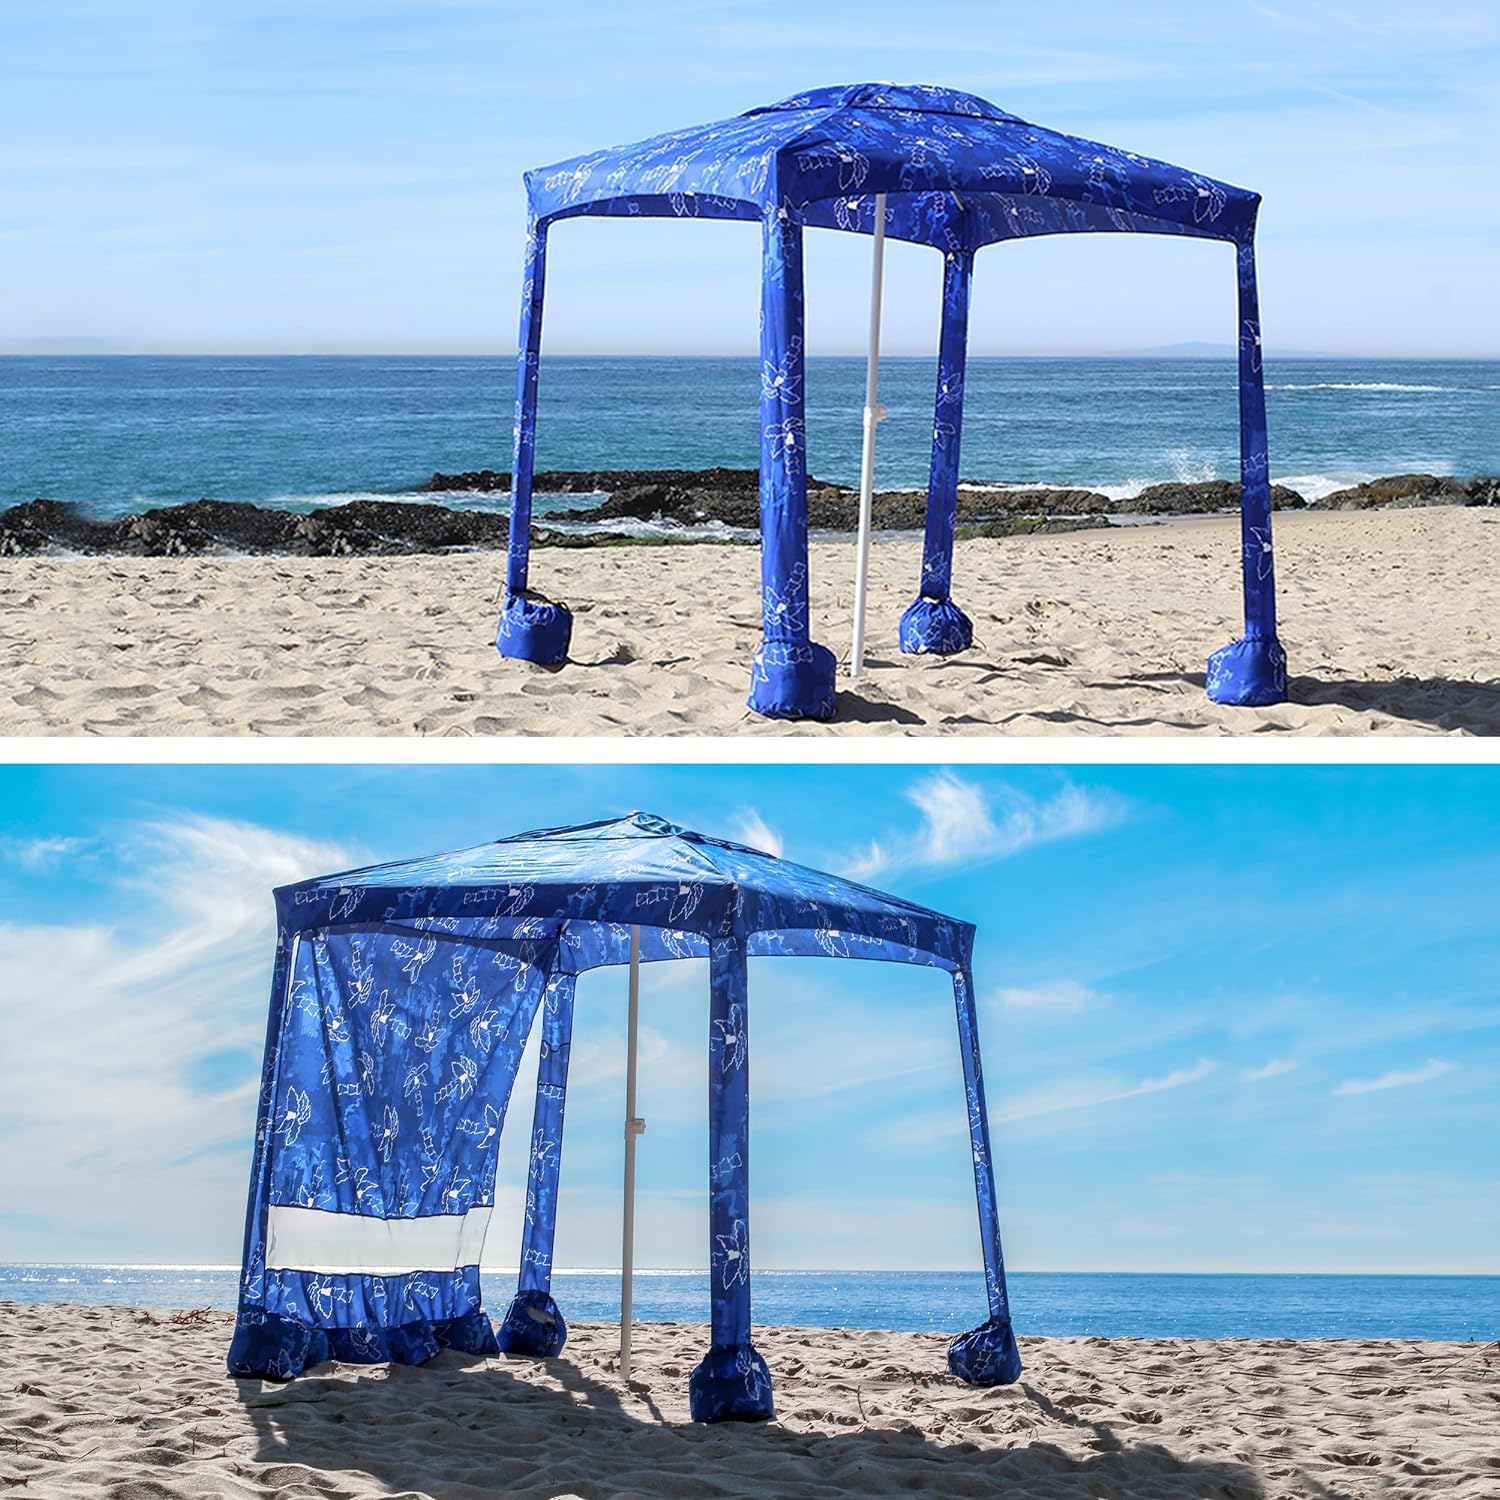 AMMSUN 6.2'×6.2' Beach Cabana With Privacy Sunwall Tropical Blue